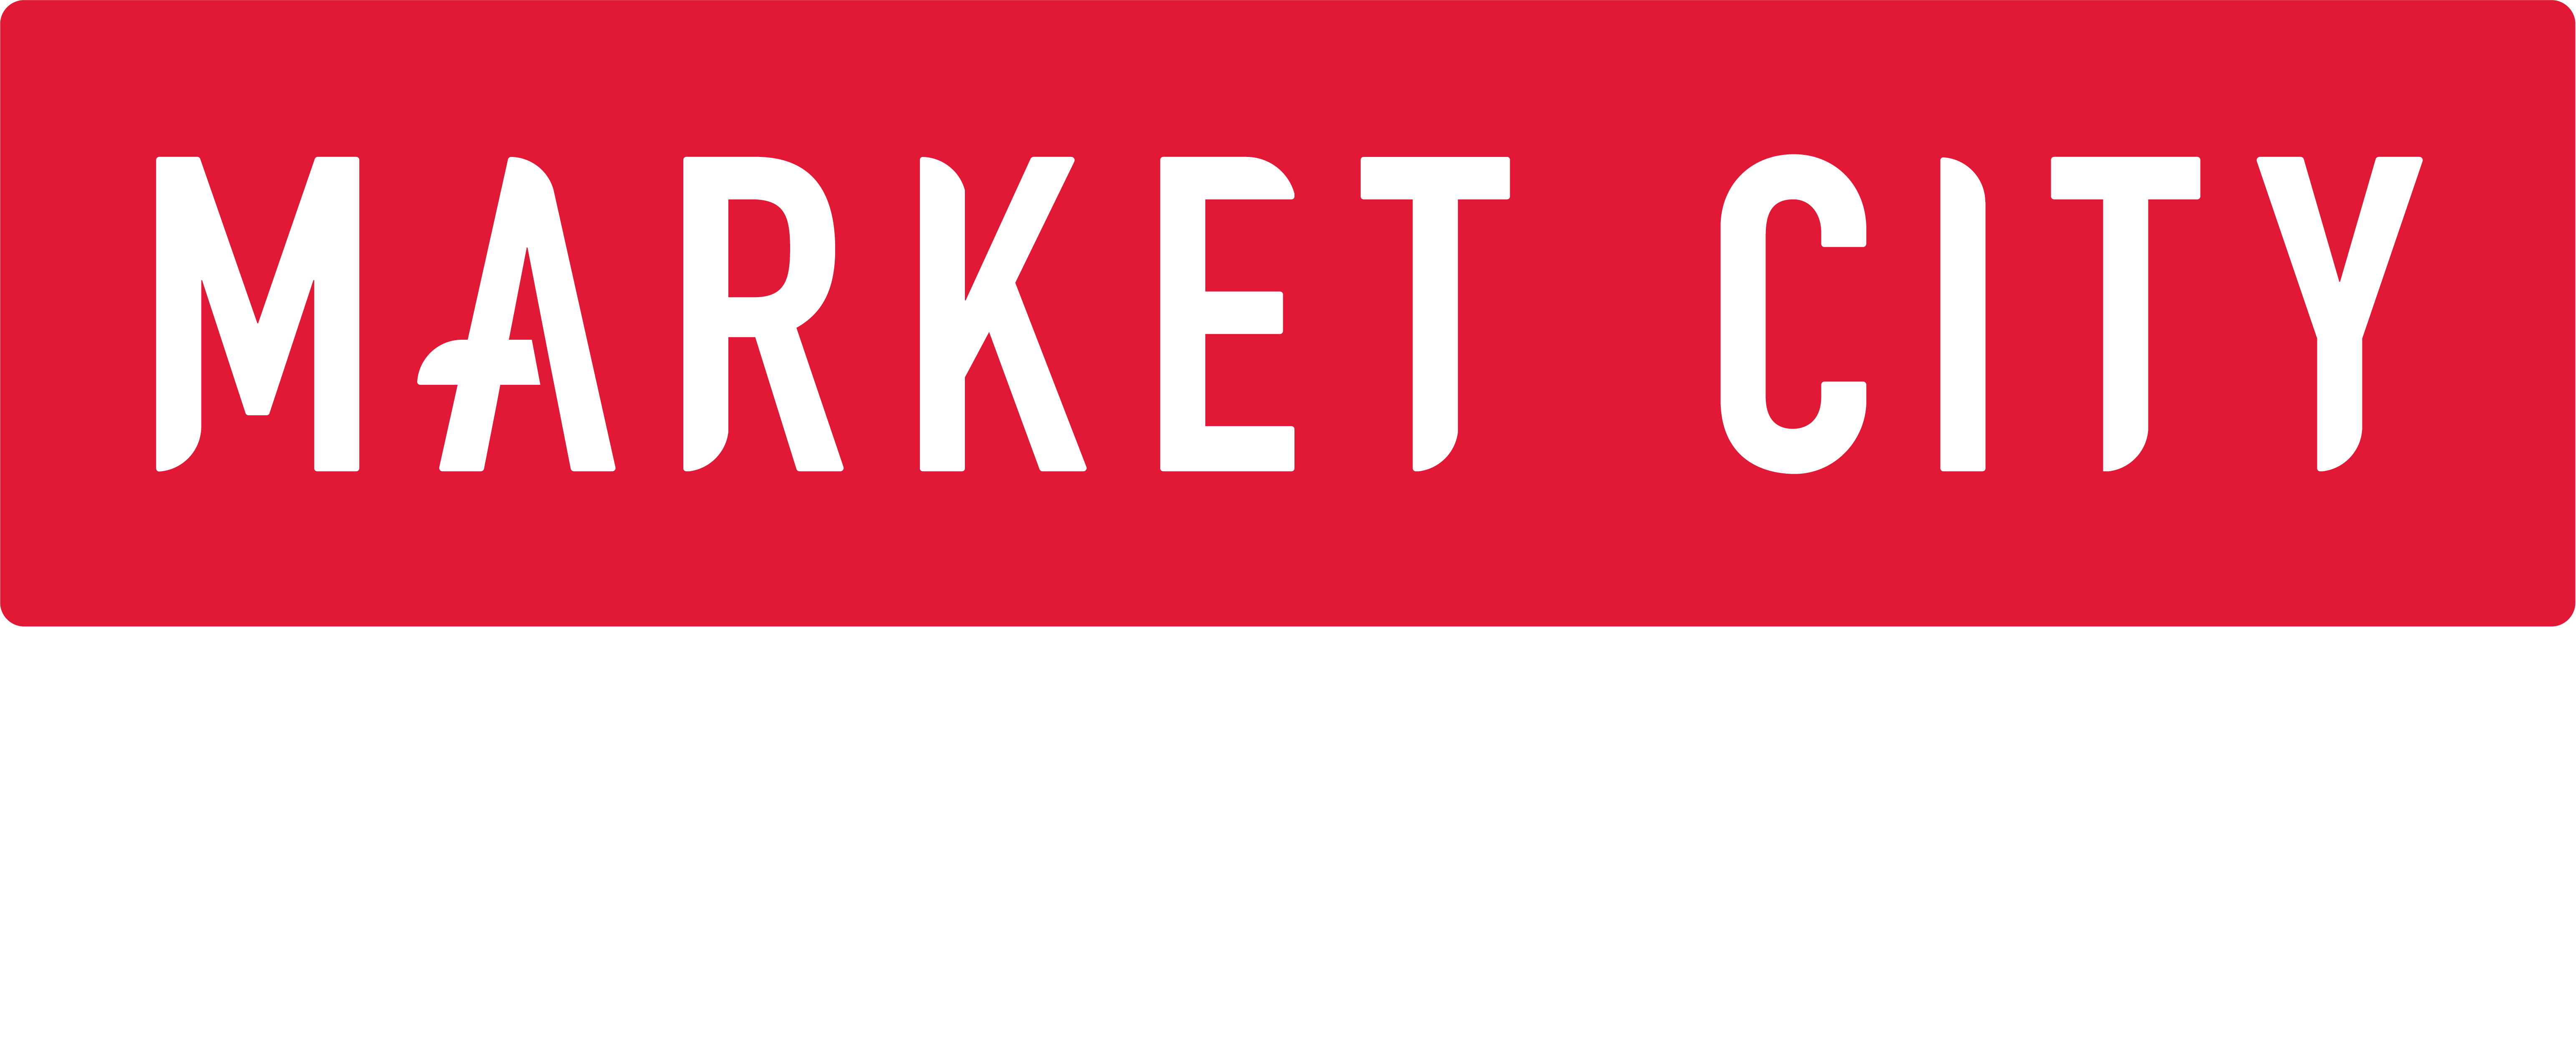 Market City Logo